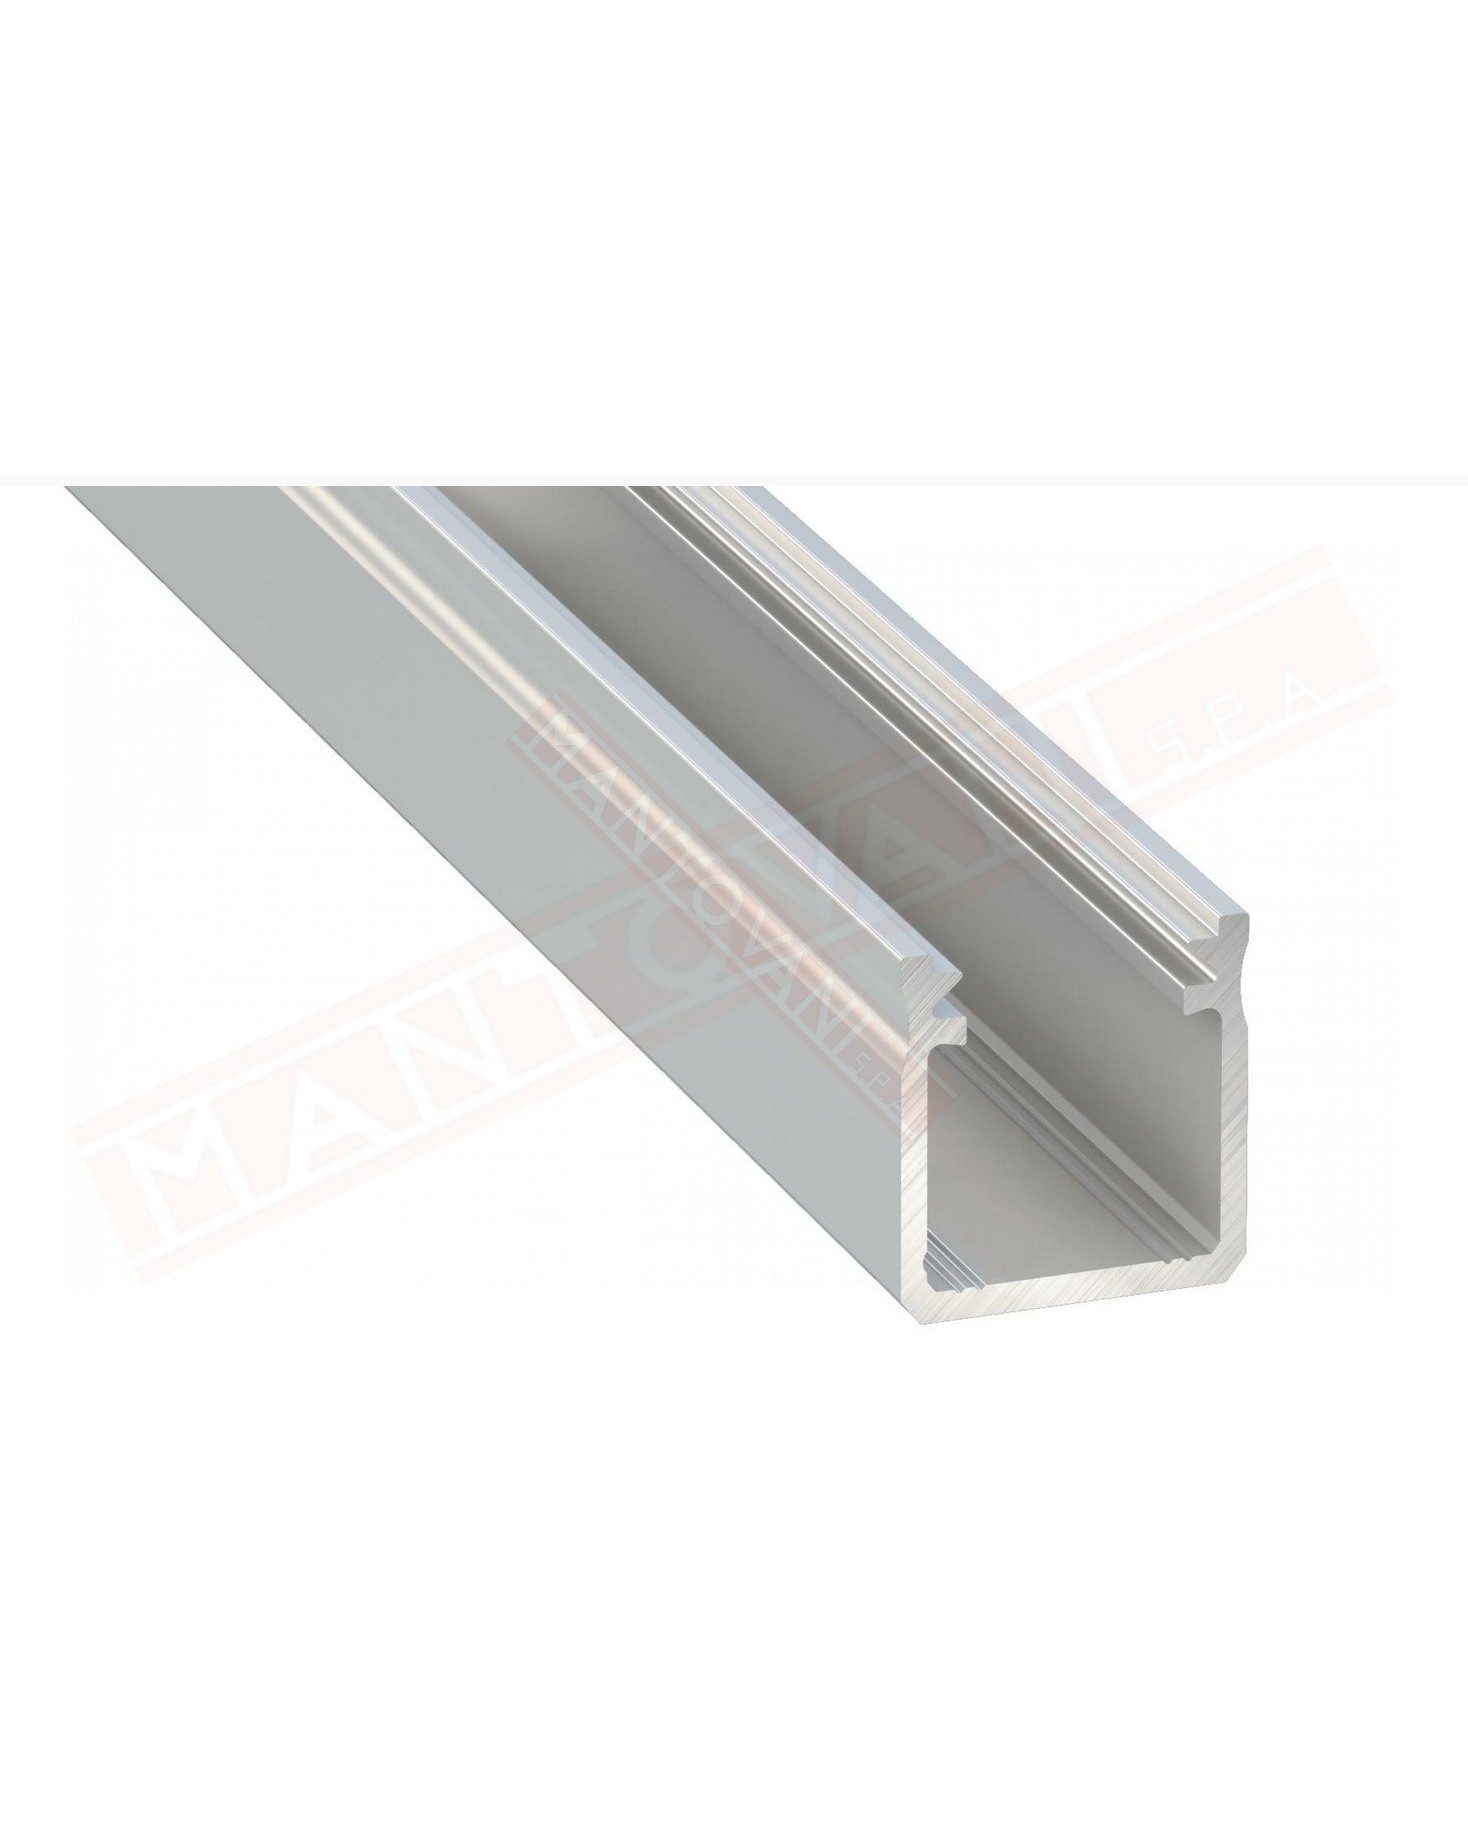 Profilo 3 metri alluminio anodizzato argento tipo y senza copertura al metro misure 18x17 mm copertura 2011-2012